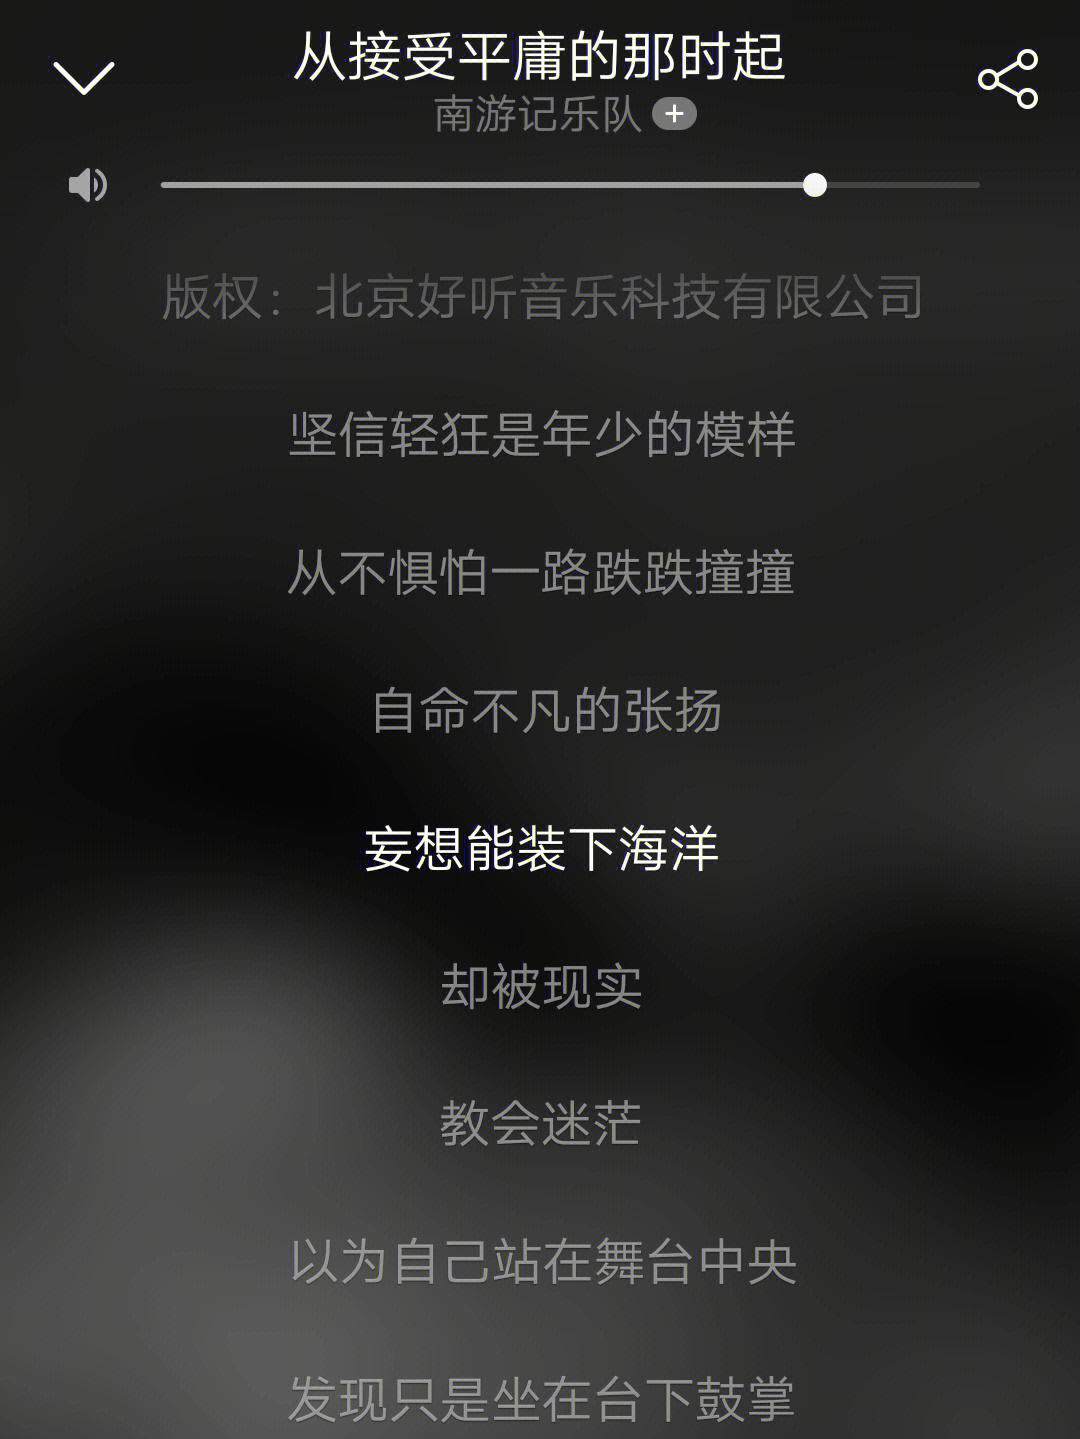 有没歌词写得好的华语歌曲推荐啊